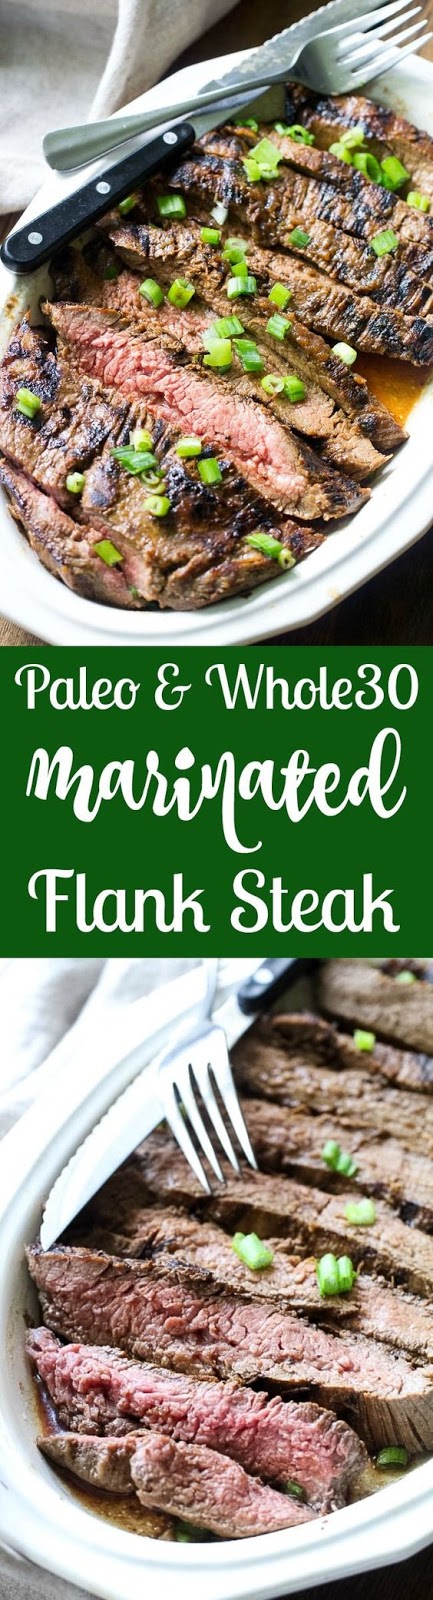 Paleo Marinated Flank Steak (Whole30)